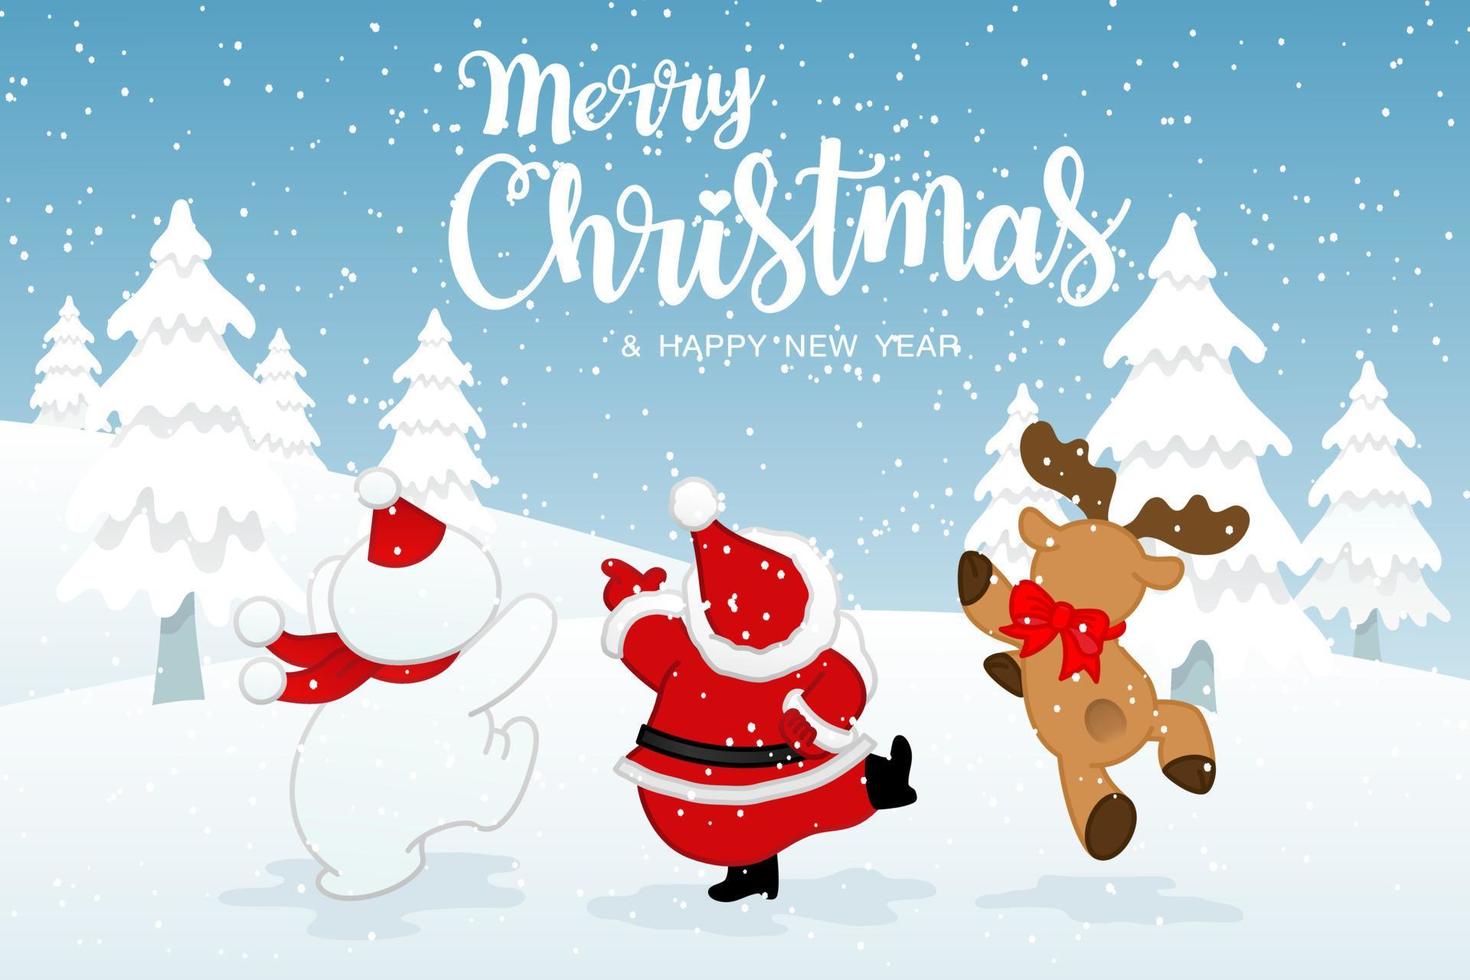 god jul och gott nytt år gratulationskort med jultomten, renar och snögubbe i vinterbakgrund, söt semester tecknad karaktär vektorillustration vektor